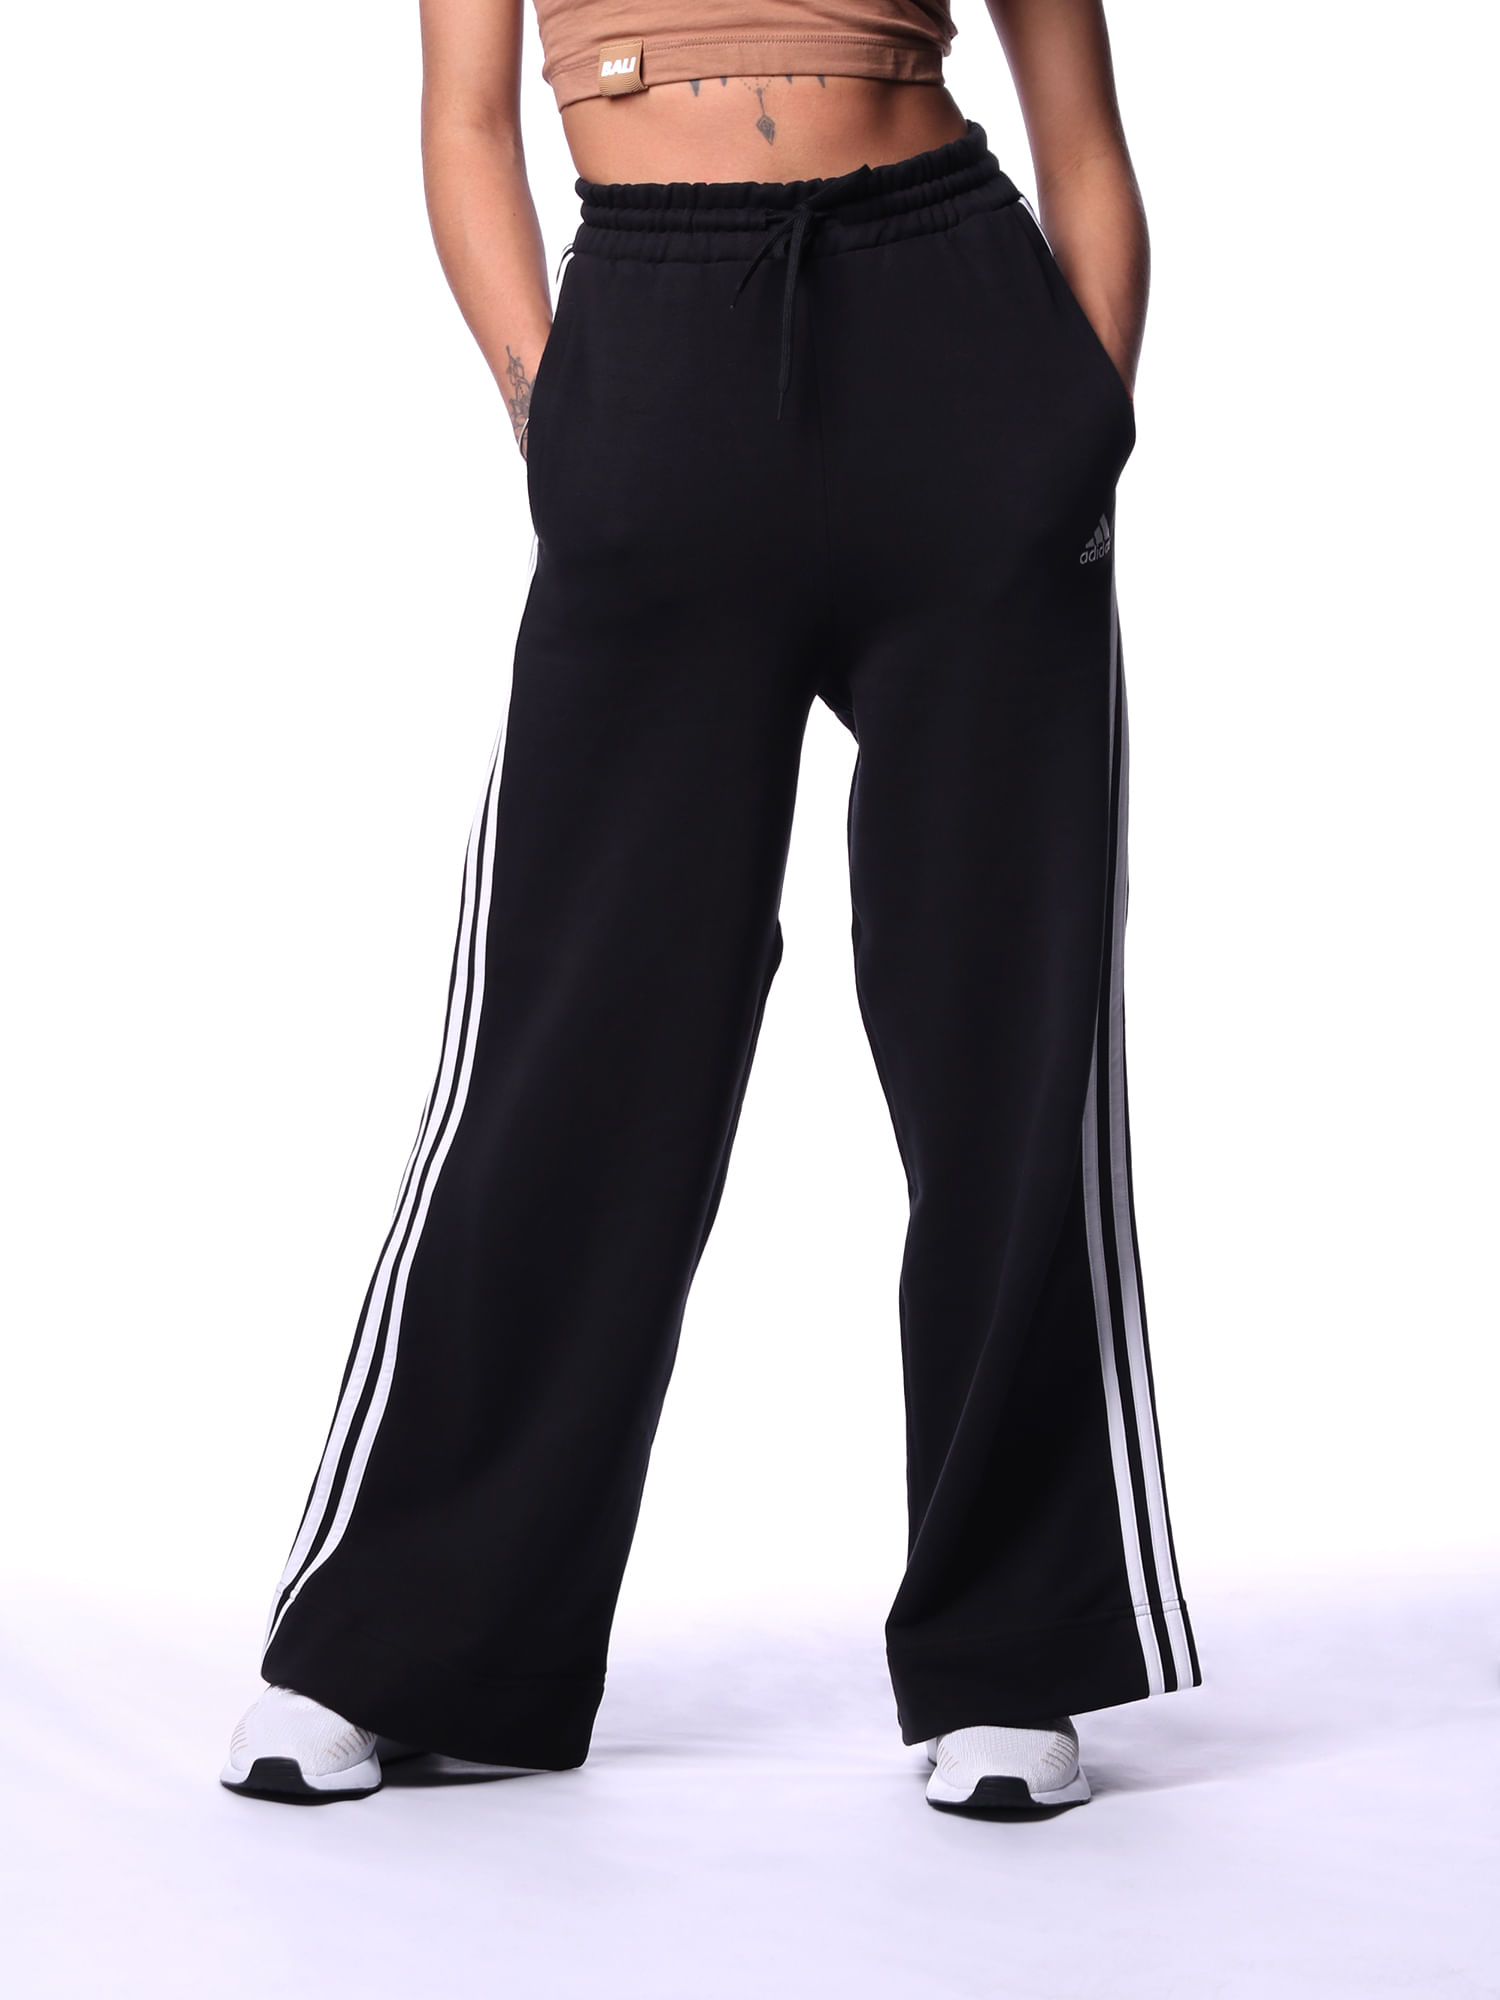 Calça moletinho jogger feminina adidas essentials 3 stripes